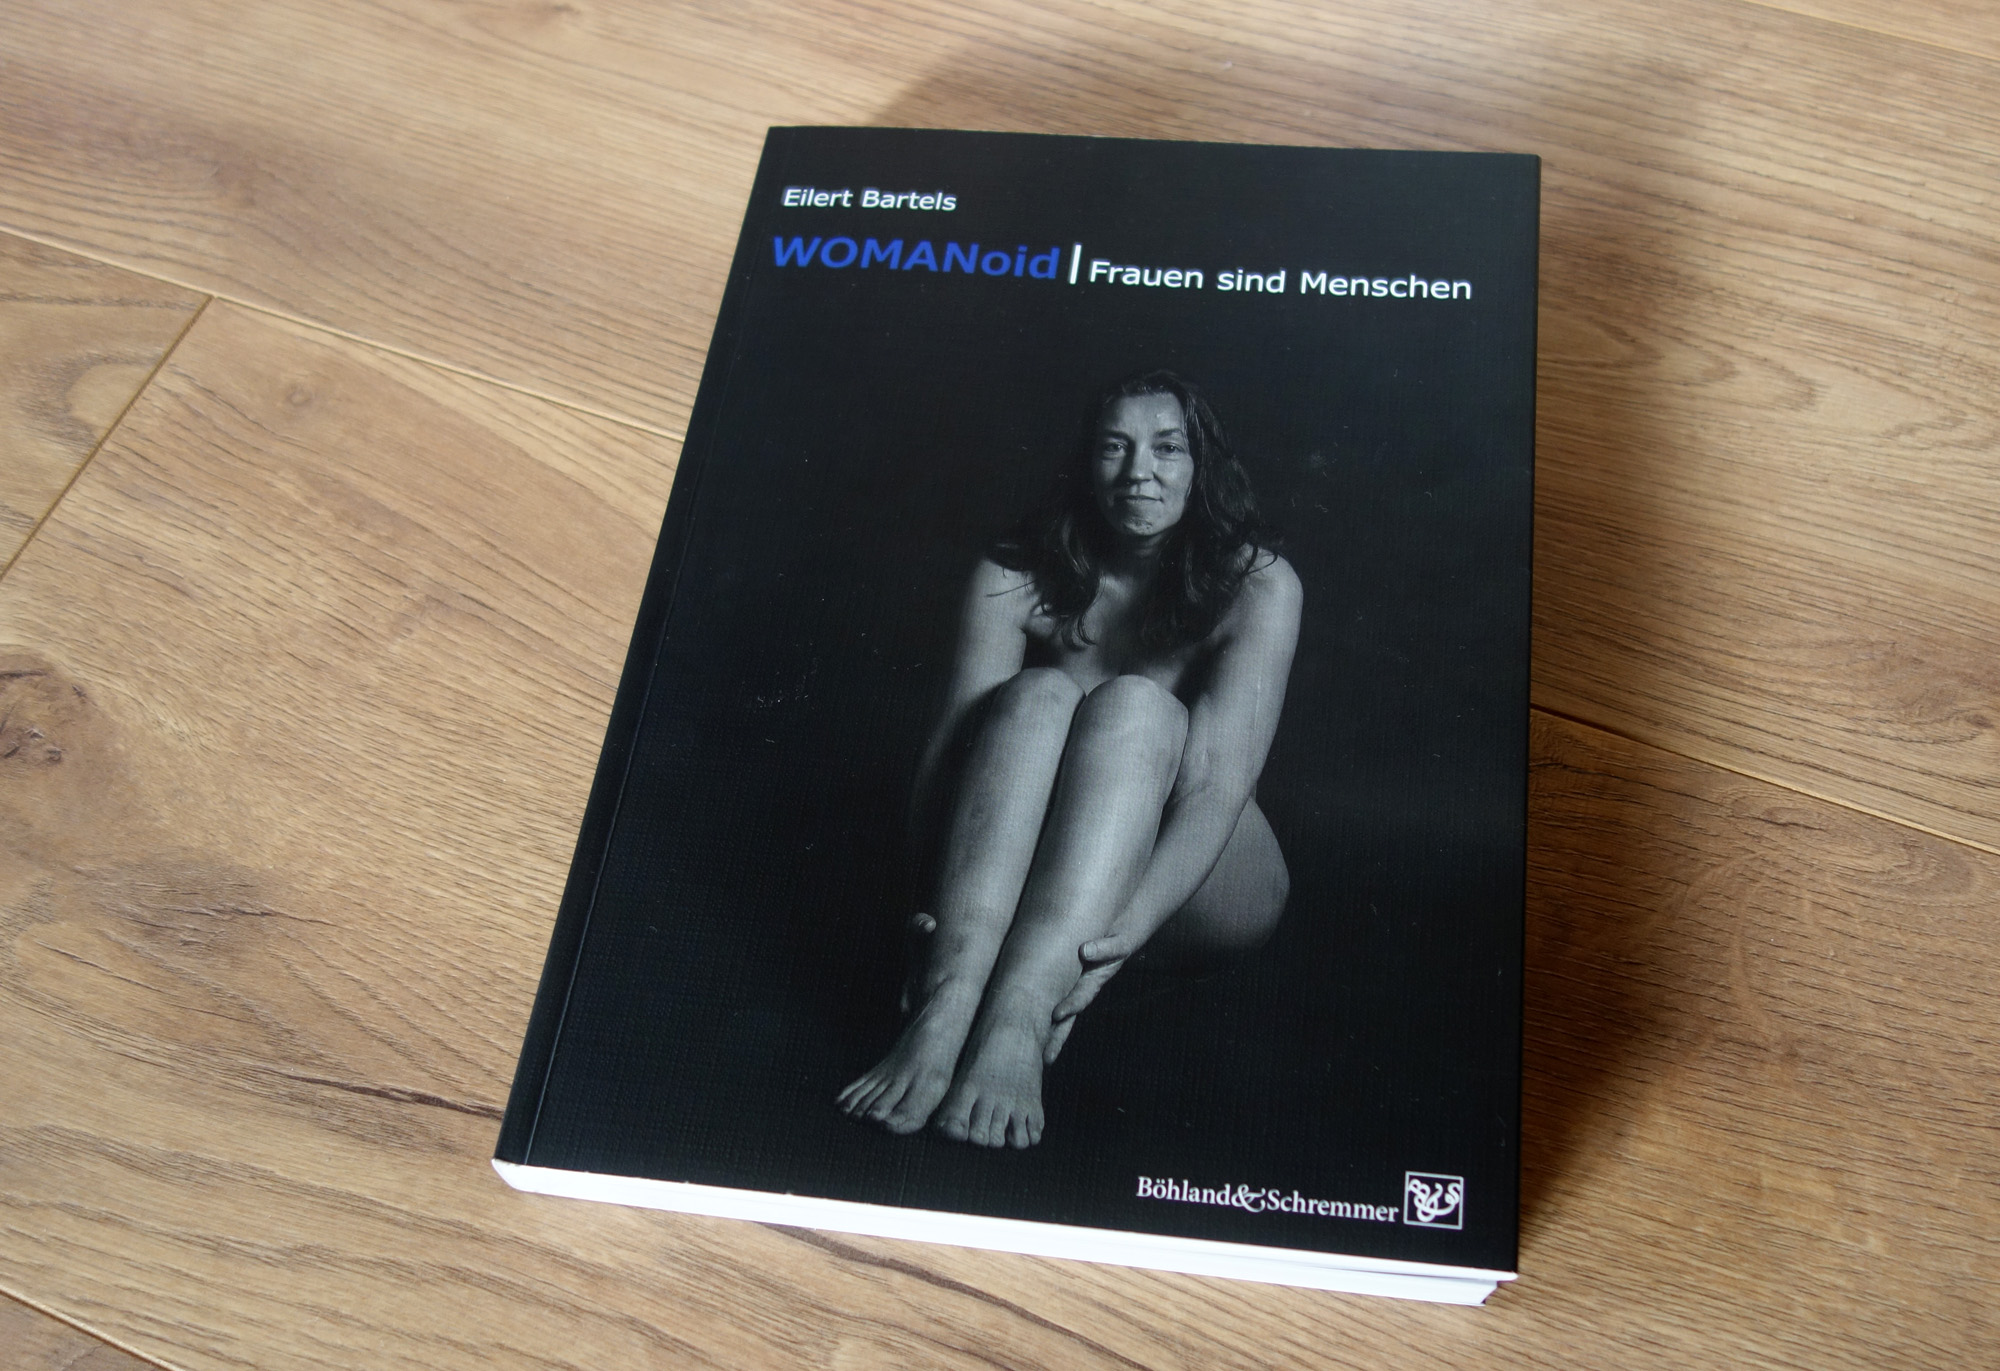 Das Buch WOMANoid fotografiert auf dem Boden liegend. Auf dem Cover sitzt eine nackte Frau mit angezogenen Beinen und lächelt verhalten in die Kamera.